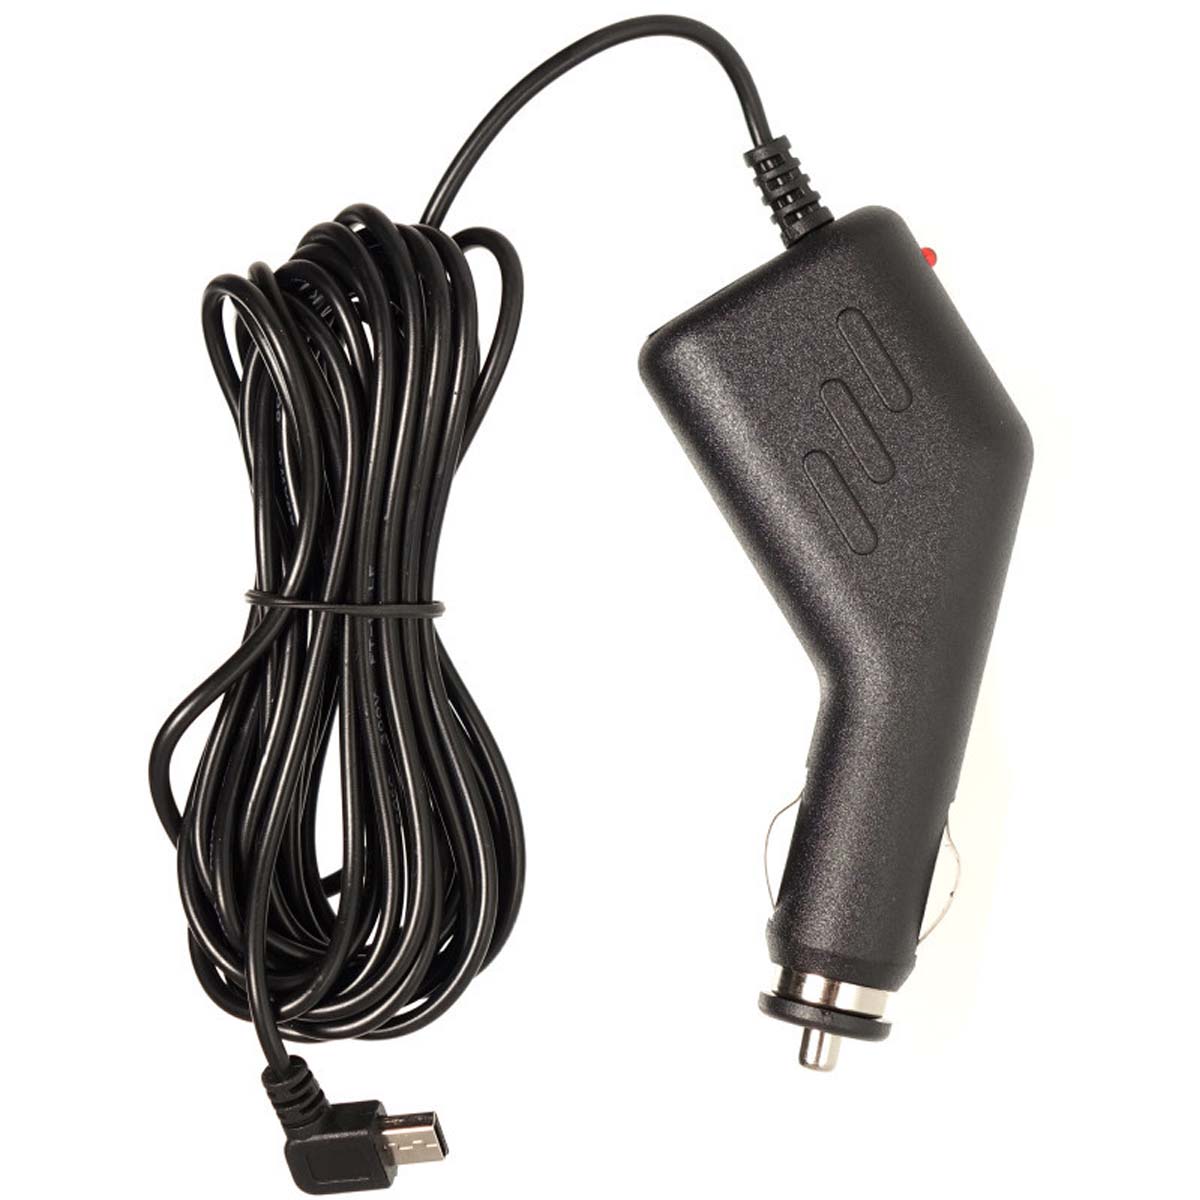 АЗУ (Автомобильное зарядное устройство) LP7 V3 с кабелем Mini USB, длина 3.5 метра, цвет черный